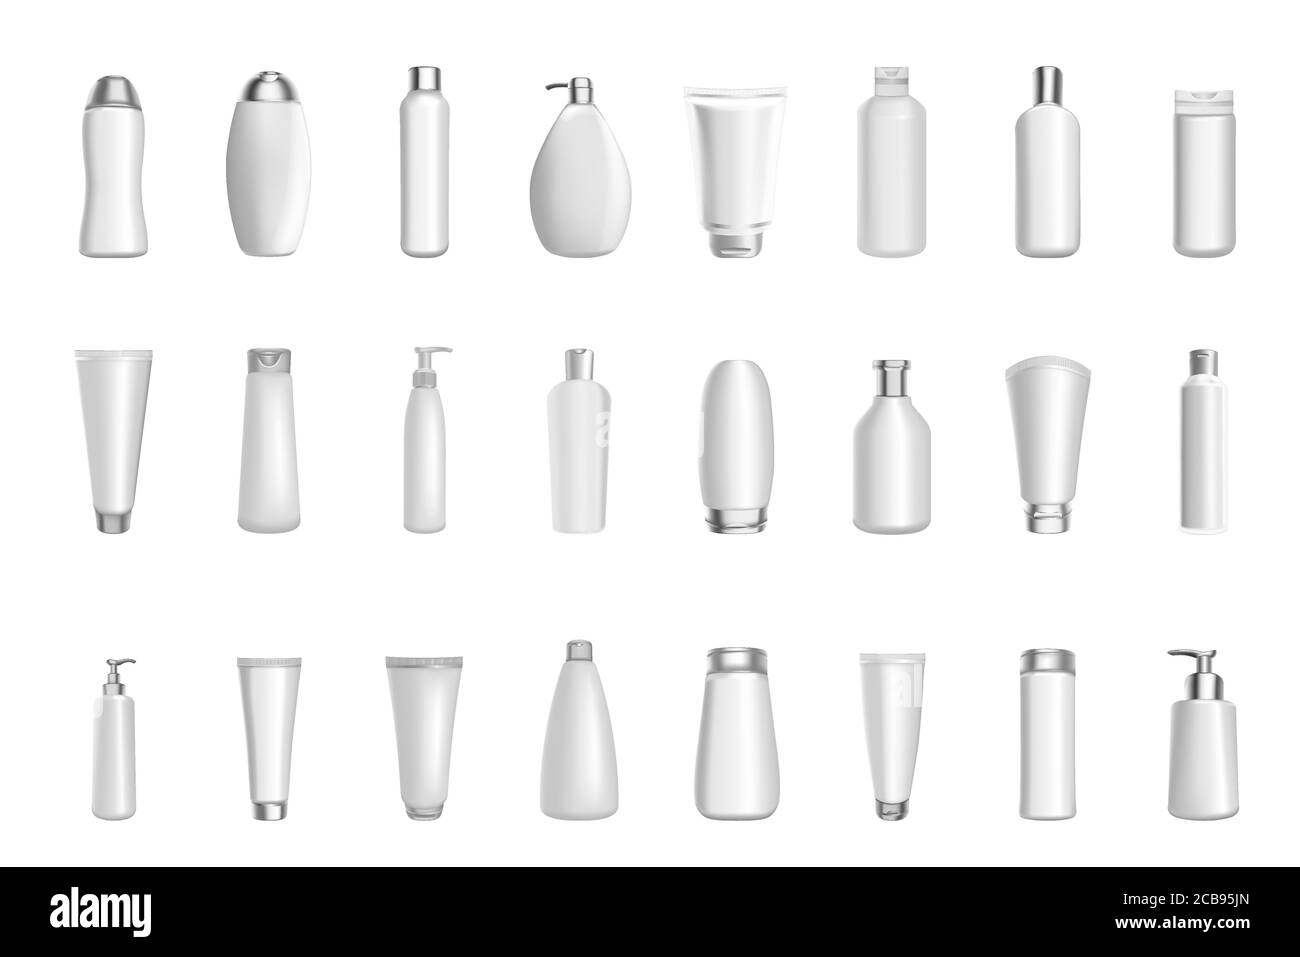 Cosmétique 3D vectorielle réaliste produit emballage de bouteilles modèles vides maquette de récipients cosmétiques en plastique blanc tendre. Vaporisateurs, crème, soupes, mousses, shampoing, distributeur Illustration de Vecteur